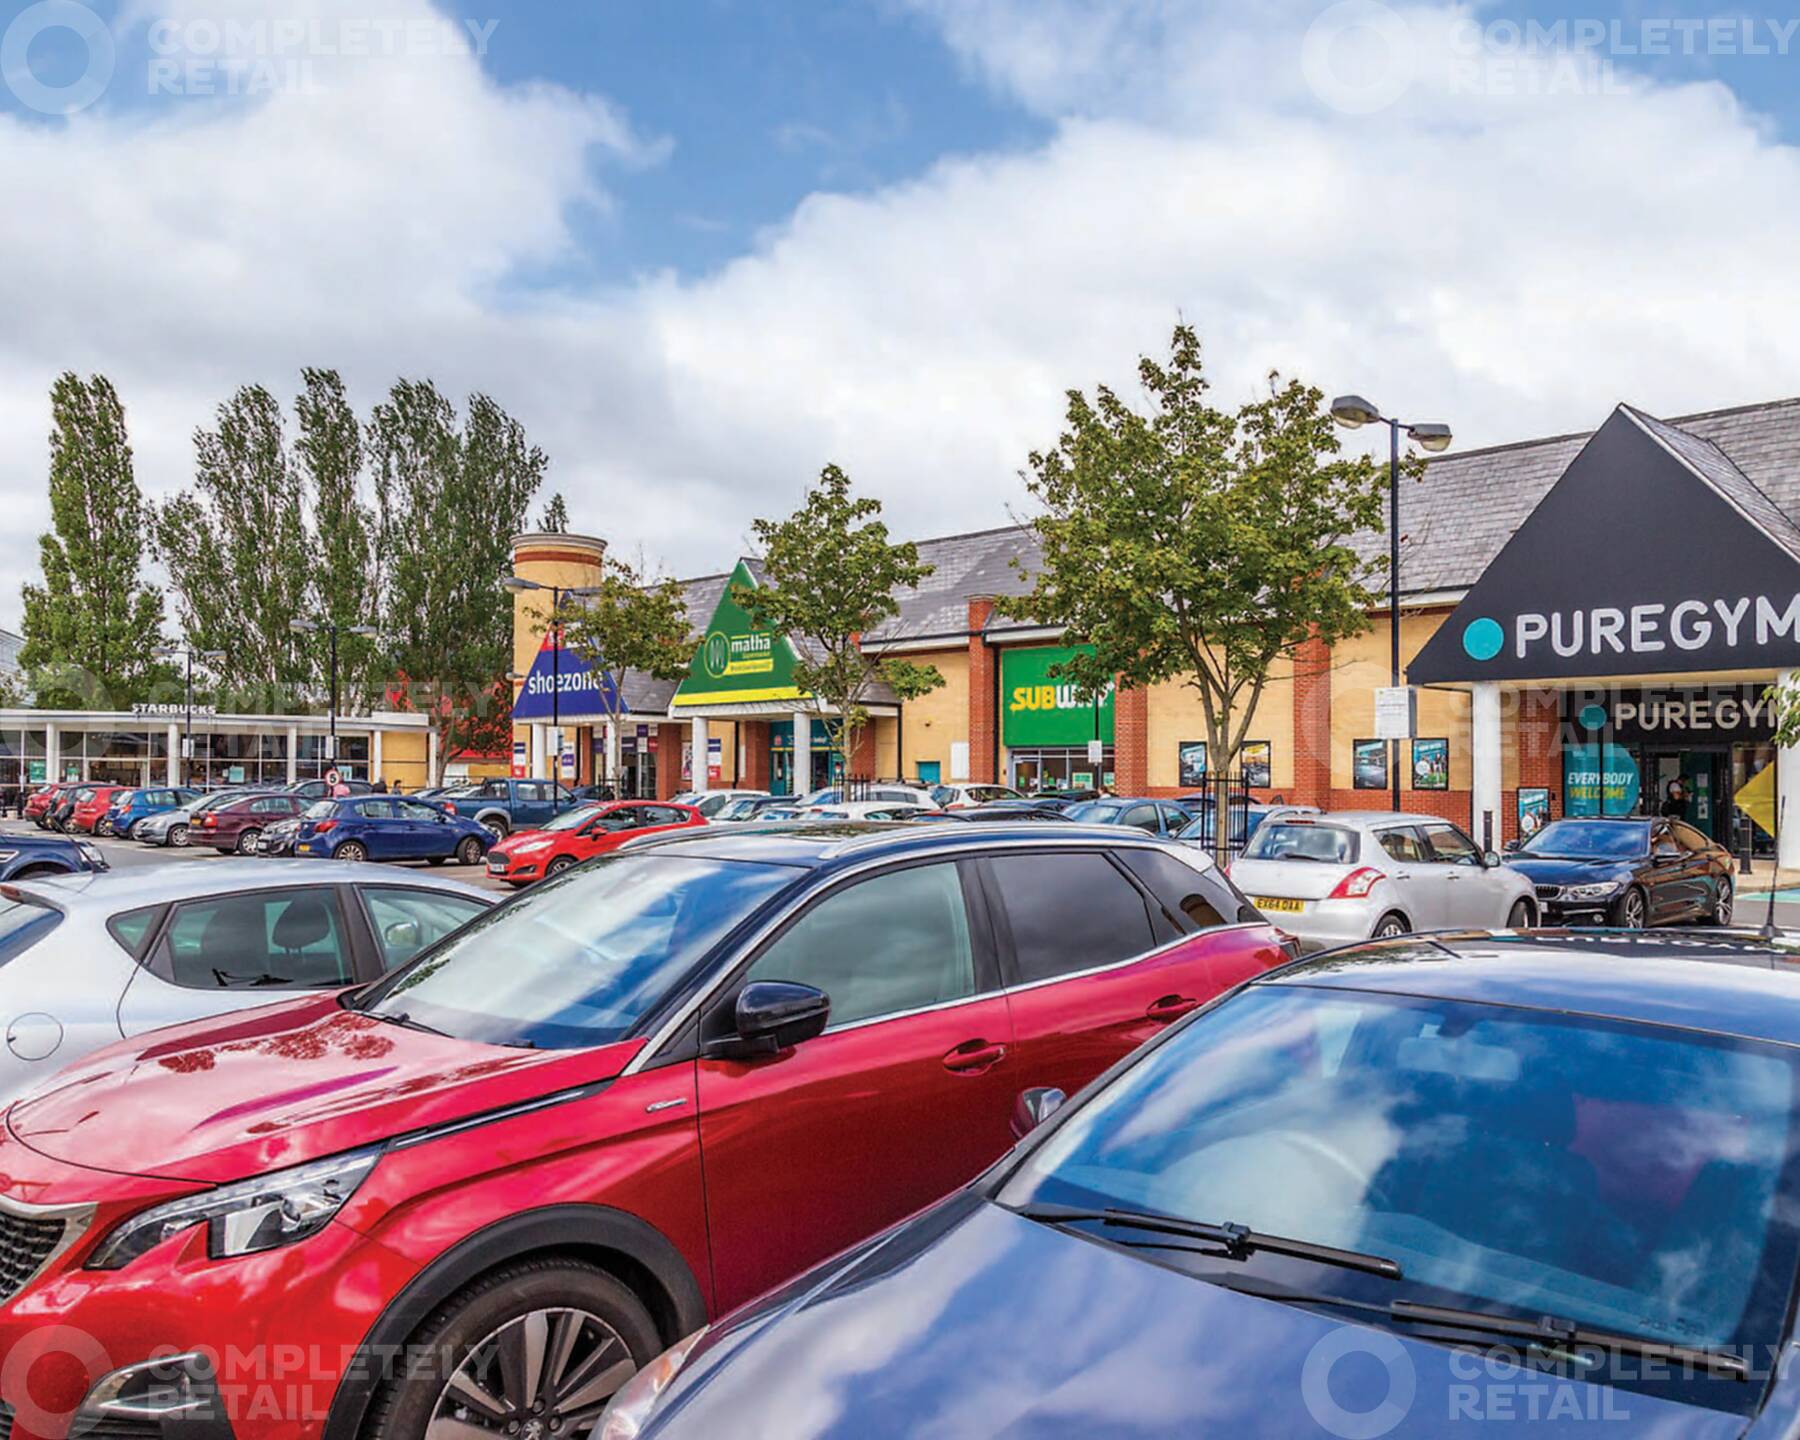 Colchester Retail Park